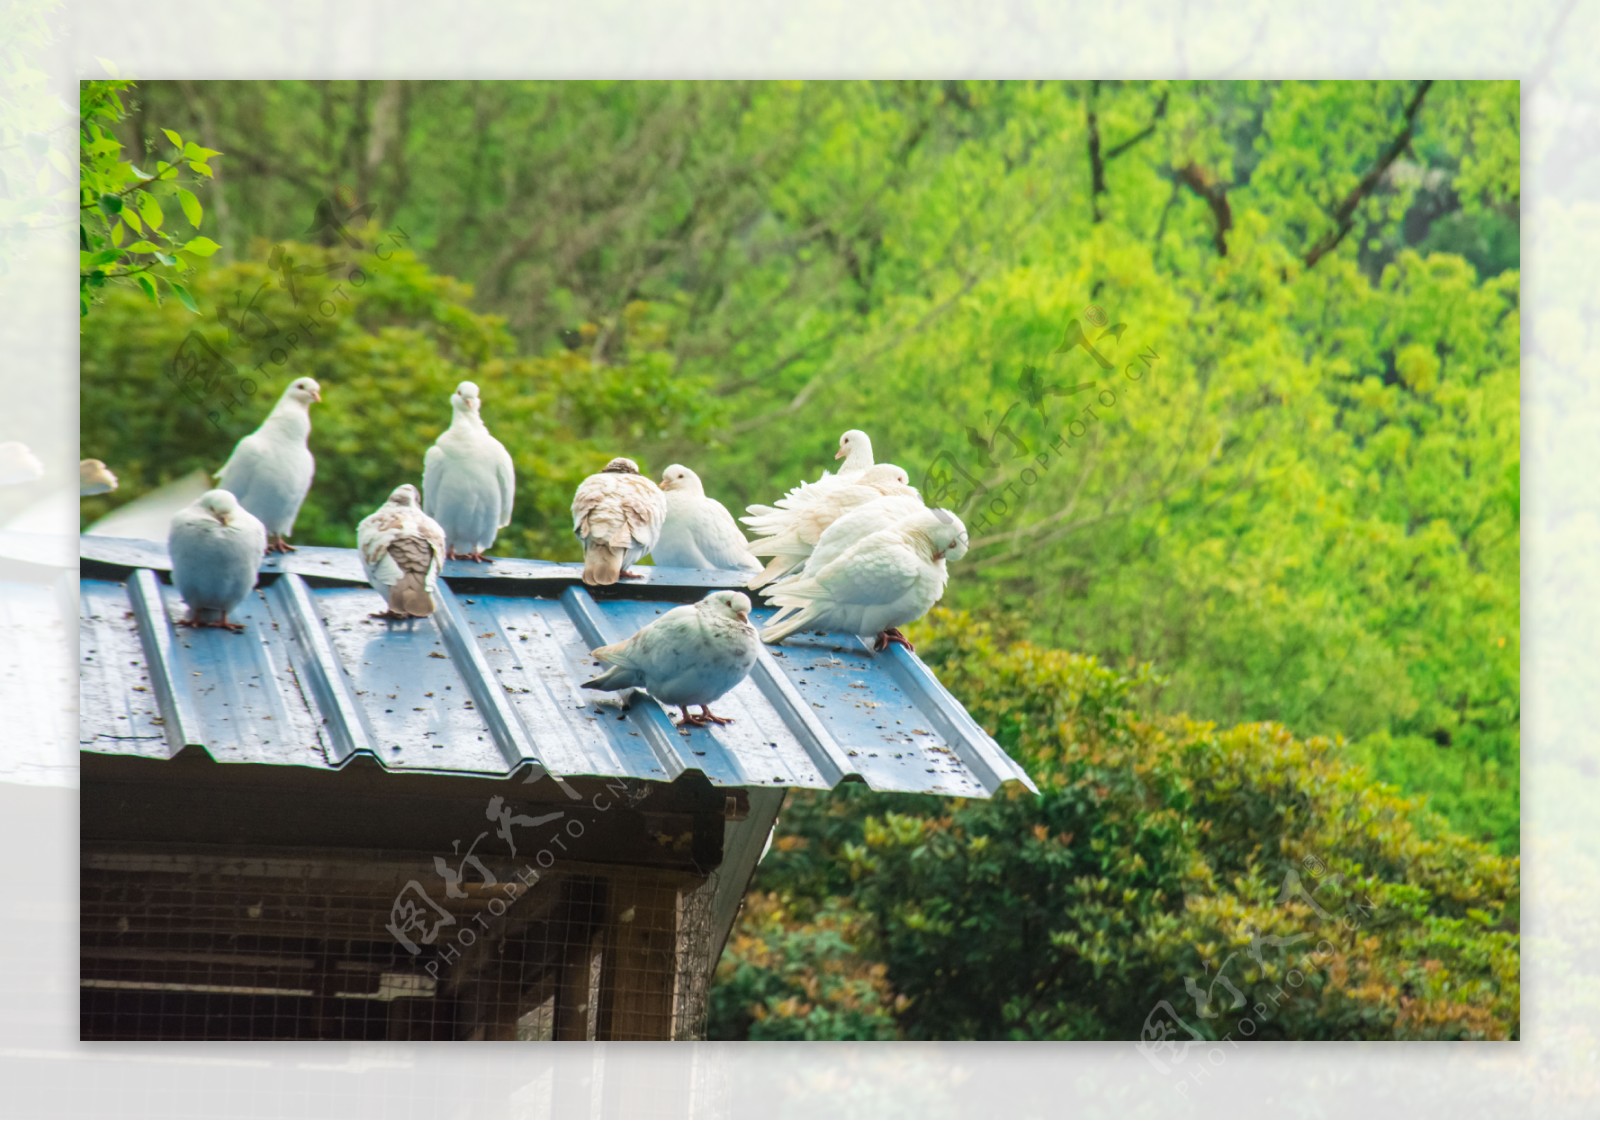 屋顶棚子上的白色鸽子